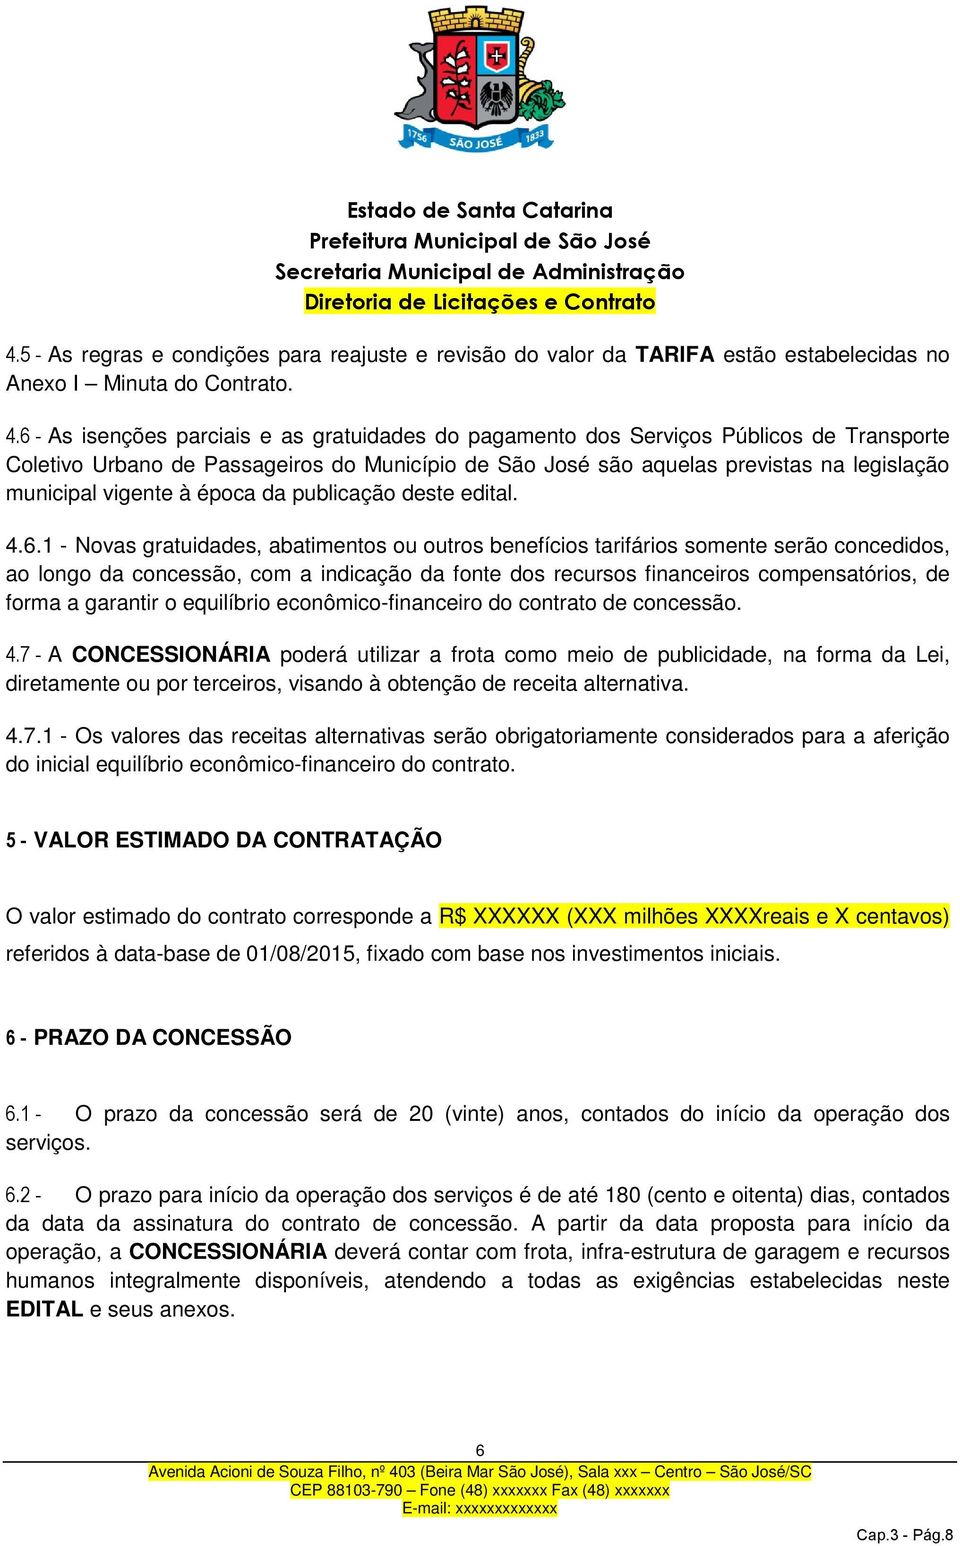 6 - As isenções parciais e as gratuidades do pagamento dos Serviços Públicos de Transporte Coletivo Urbano de Passageiros do Município de São José são aquelas previstas na legislação municipal